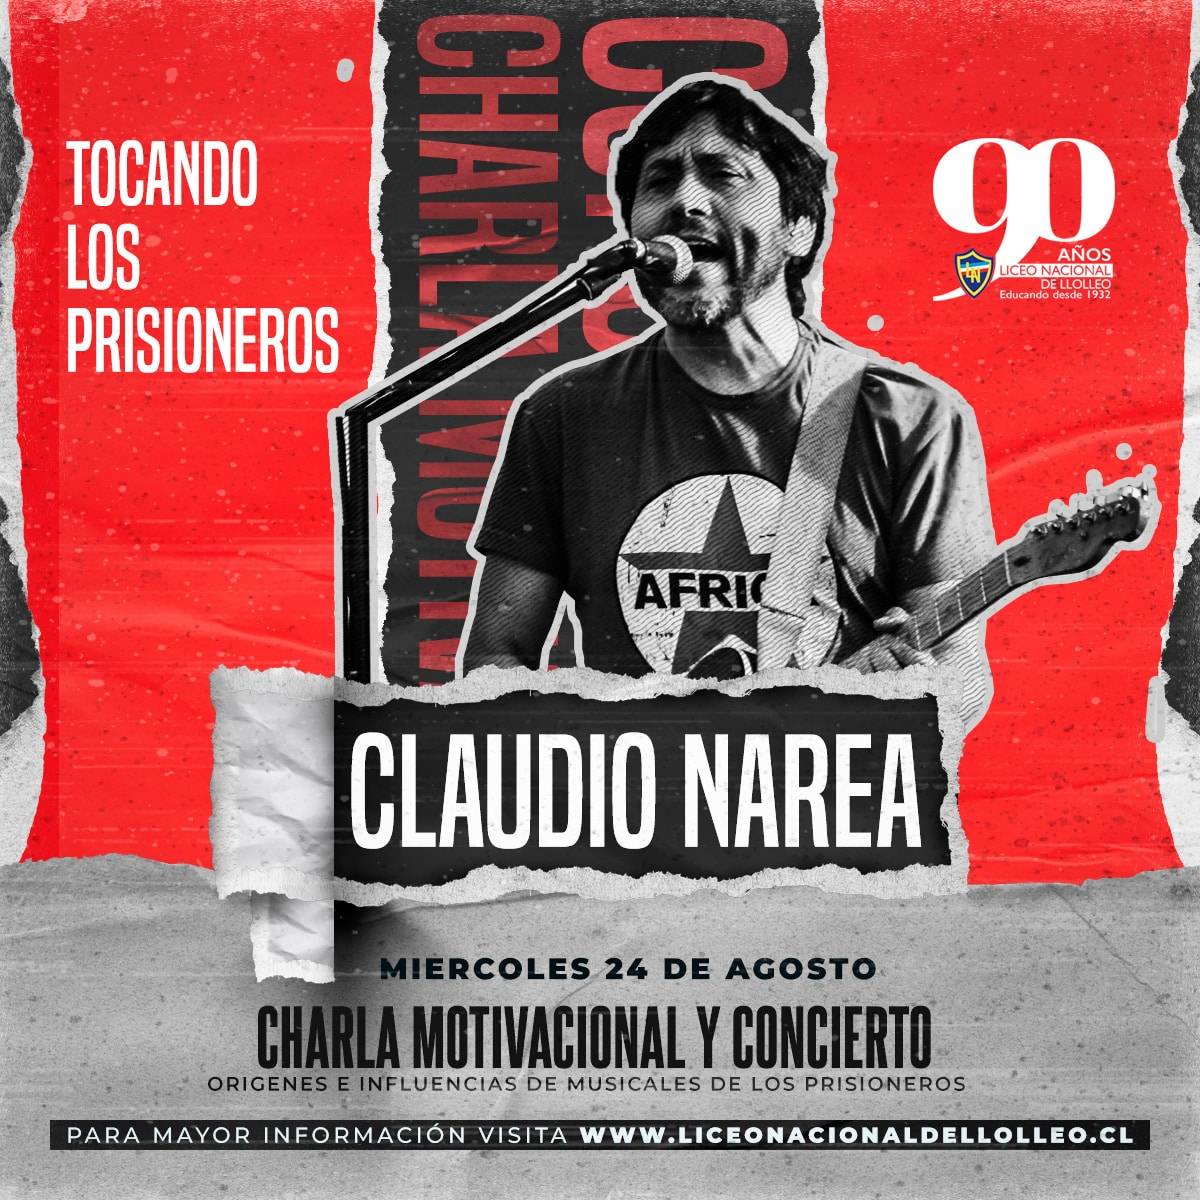 Charla motivacional y concierto de mano de Claudio Narea